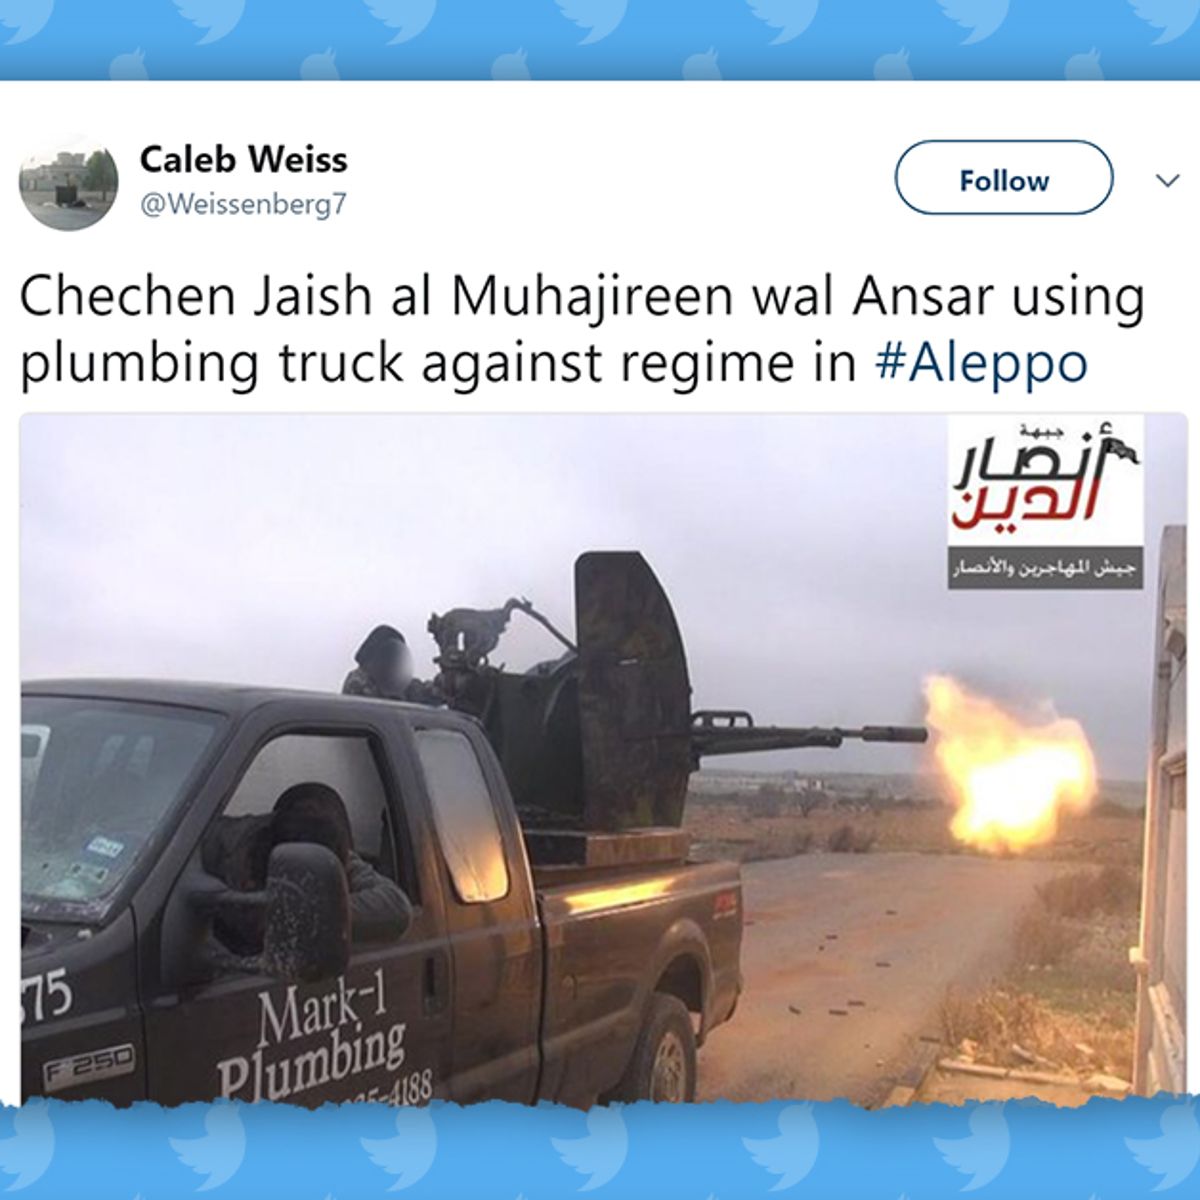 mark-1_plumbing_truck_ISIS_tweet.jpg